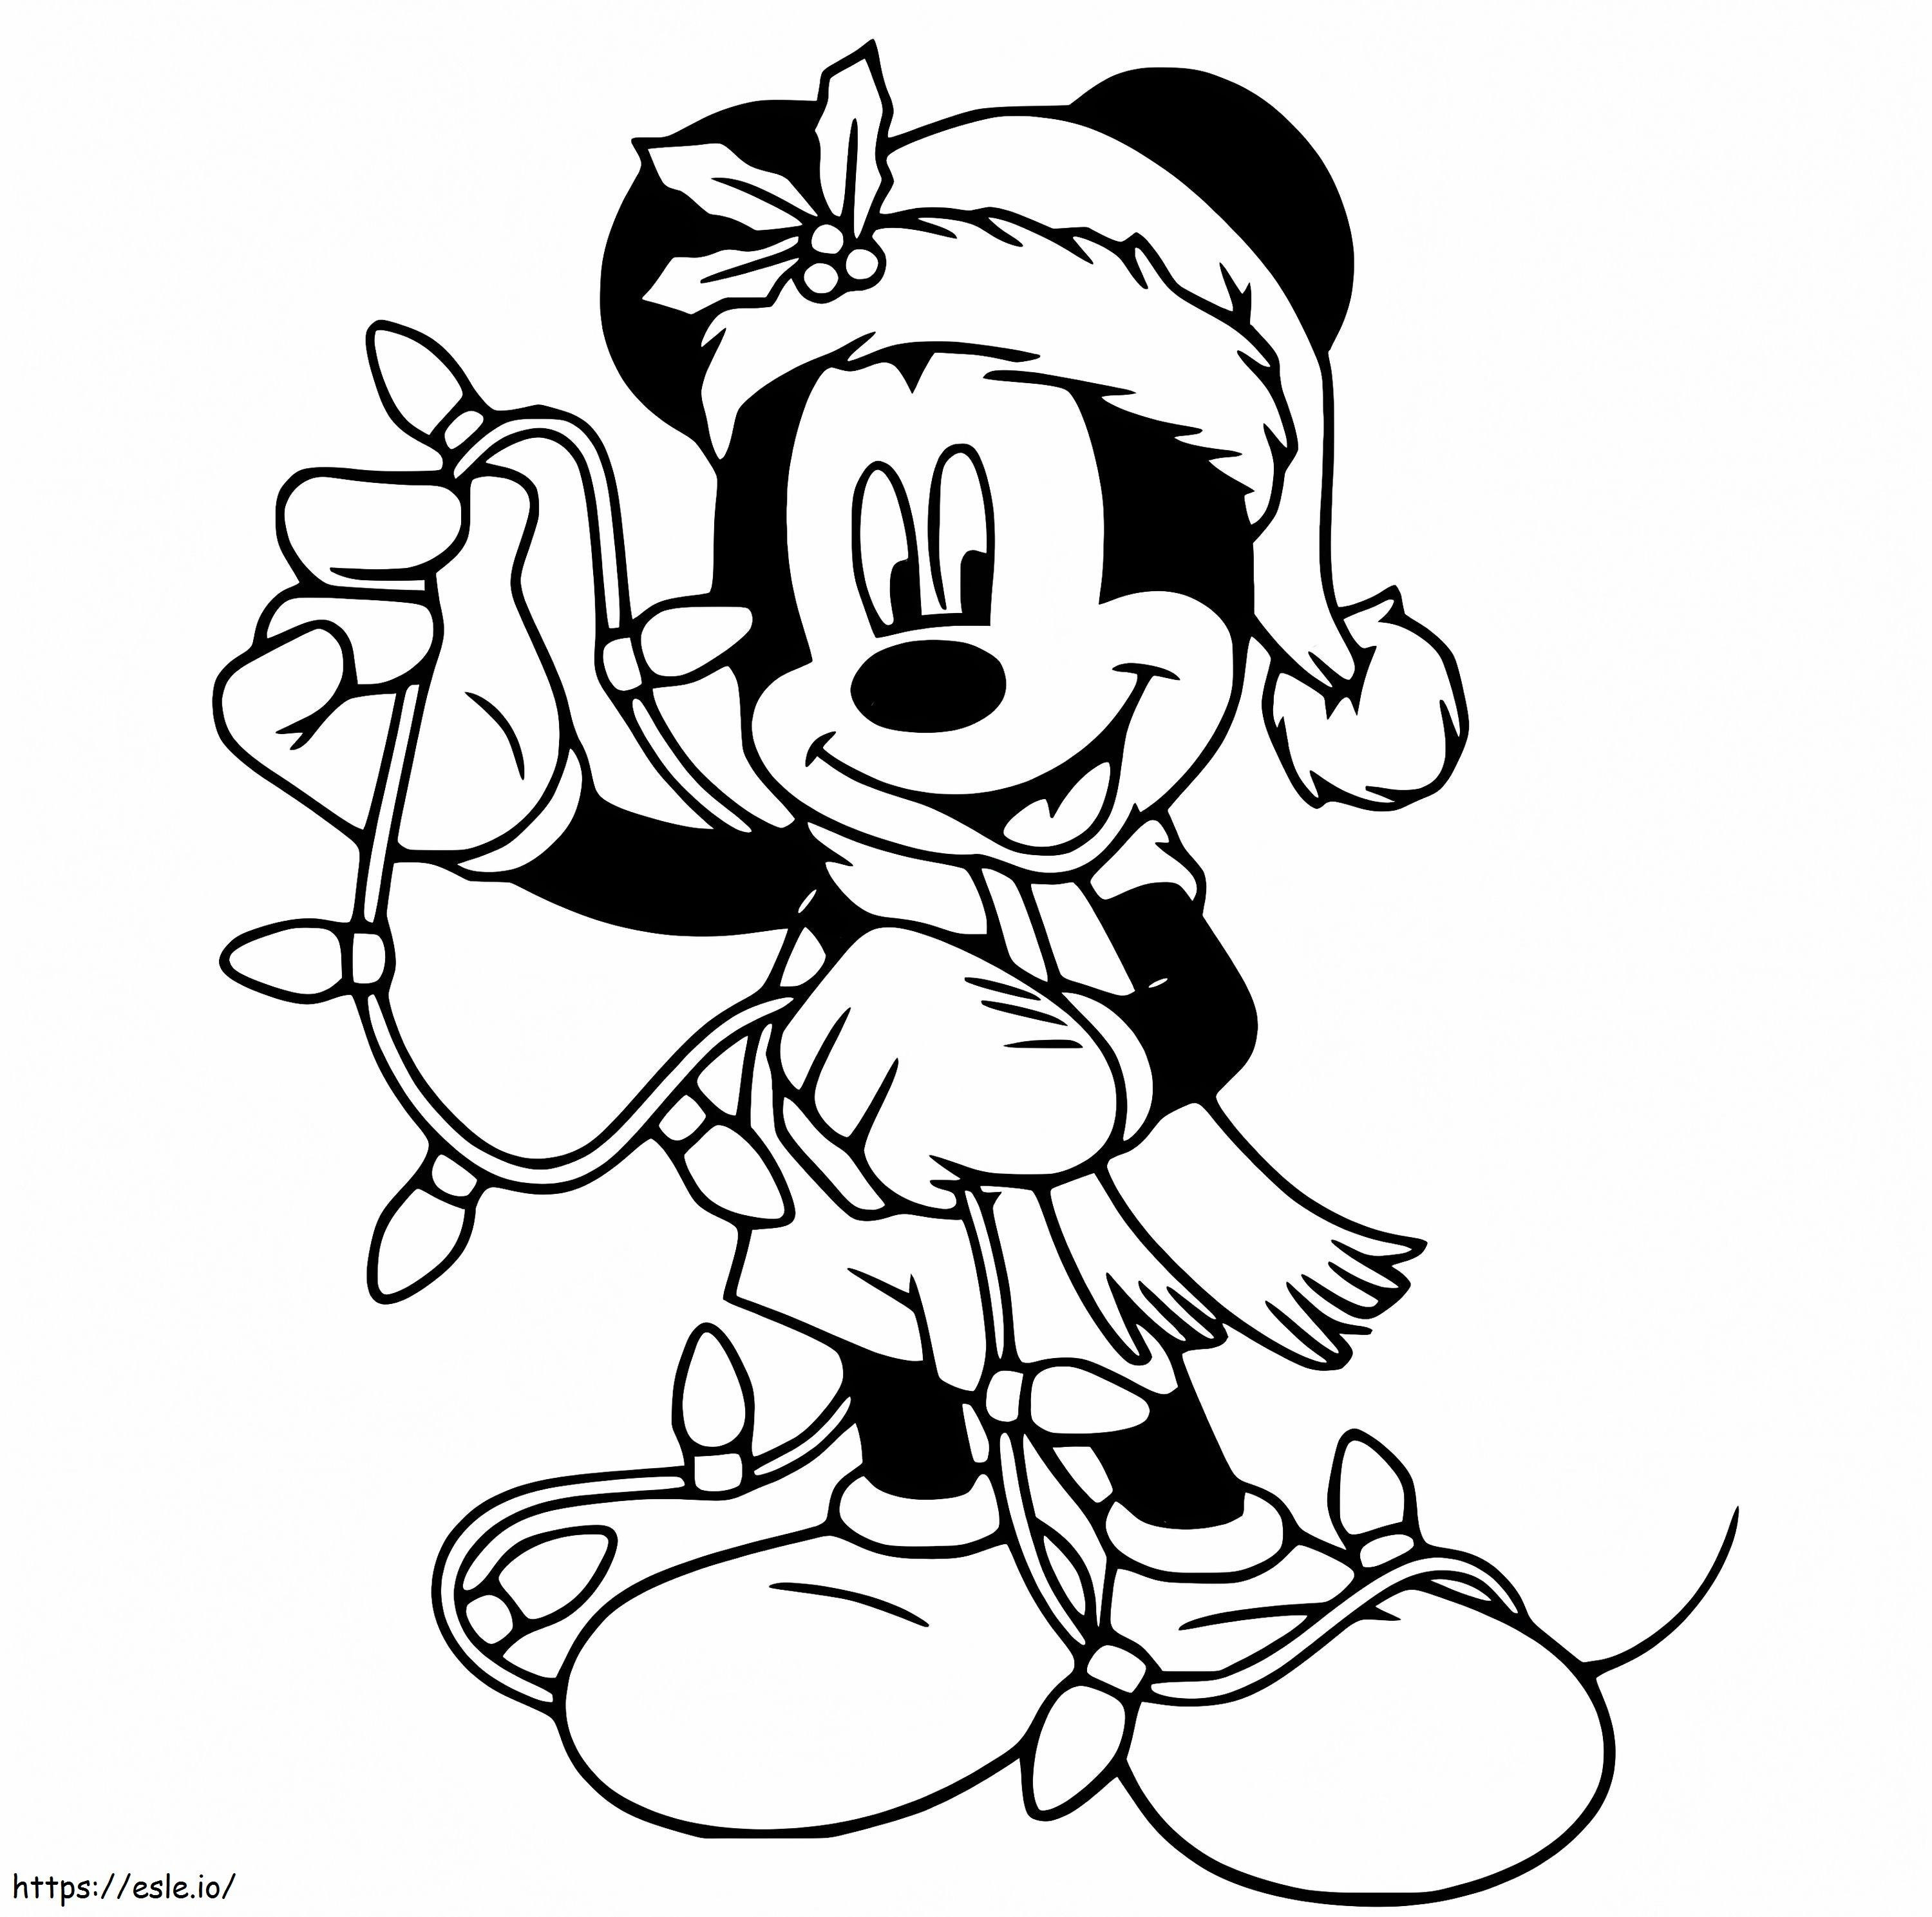 Noel Işıklı Mickey boyama